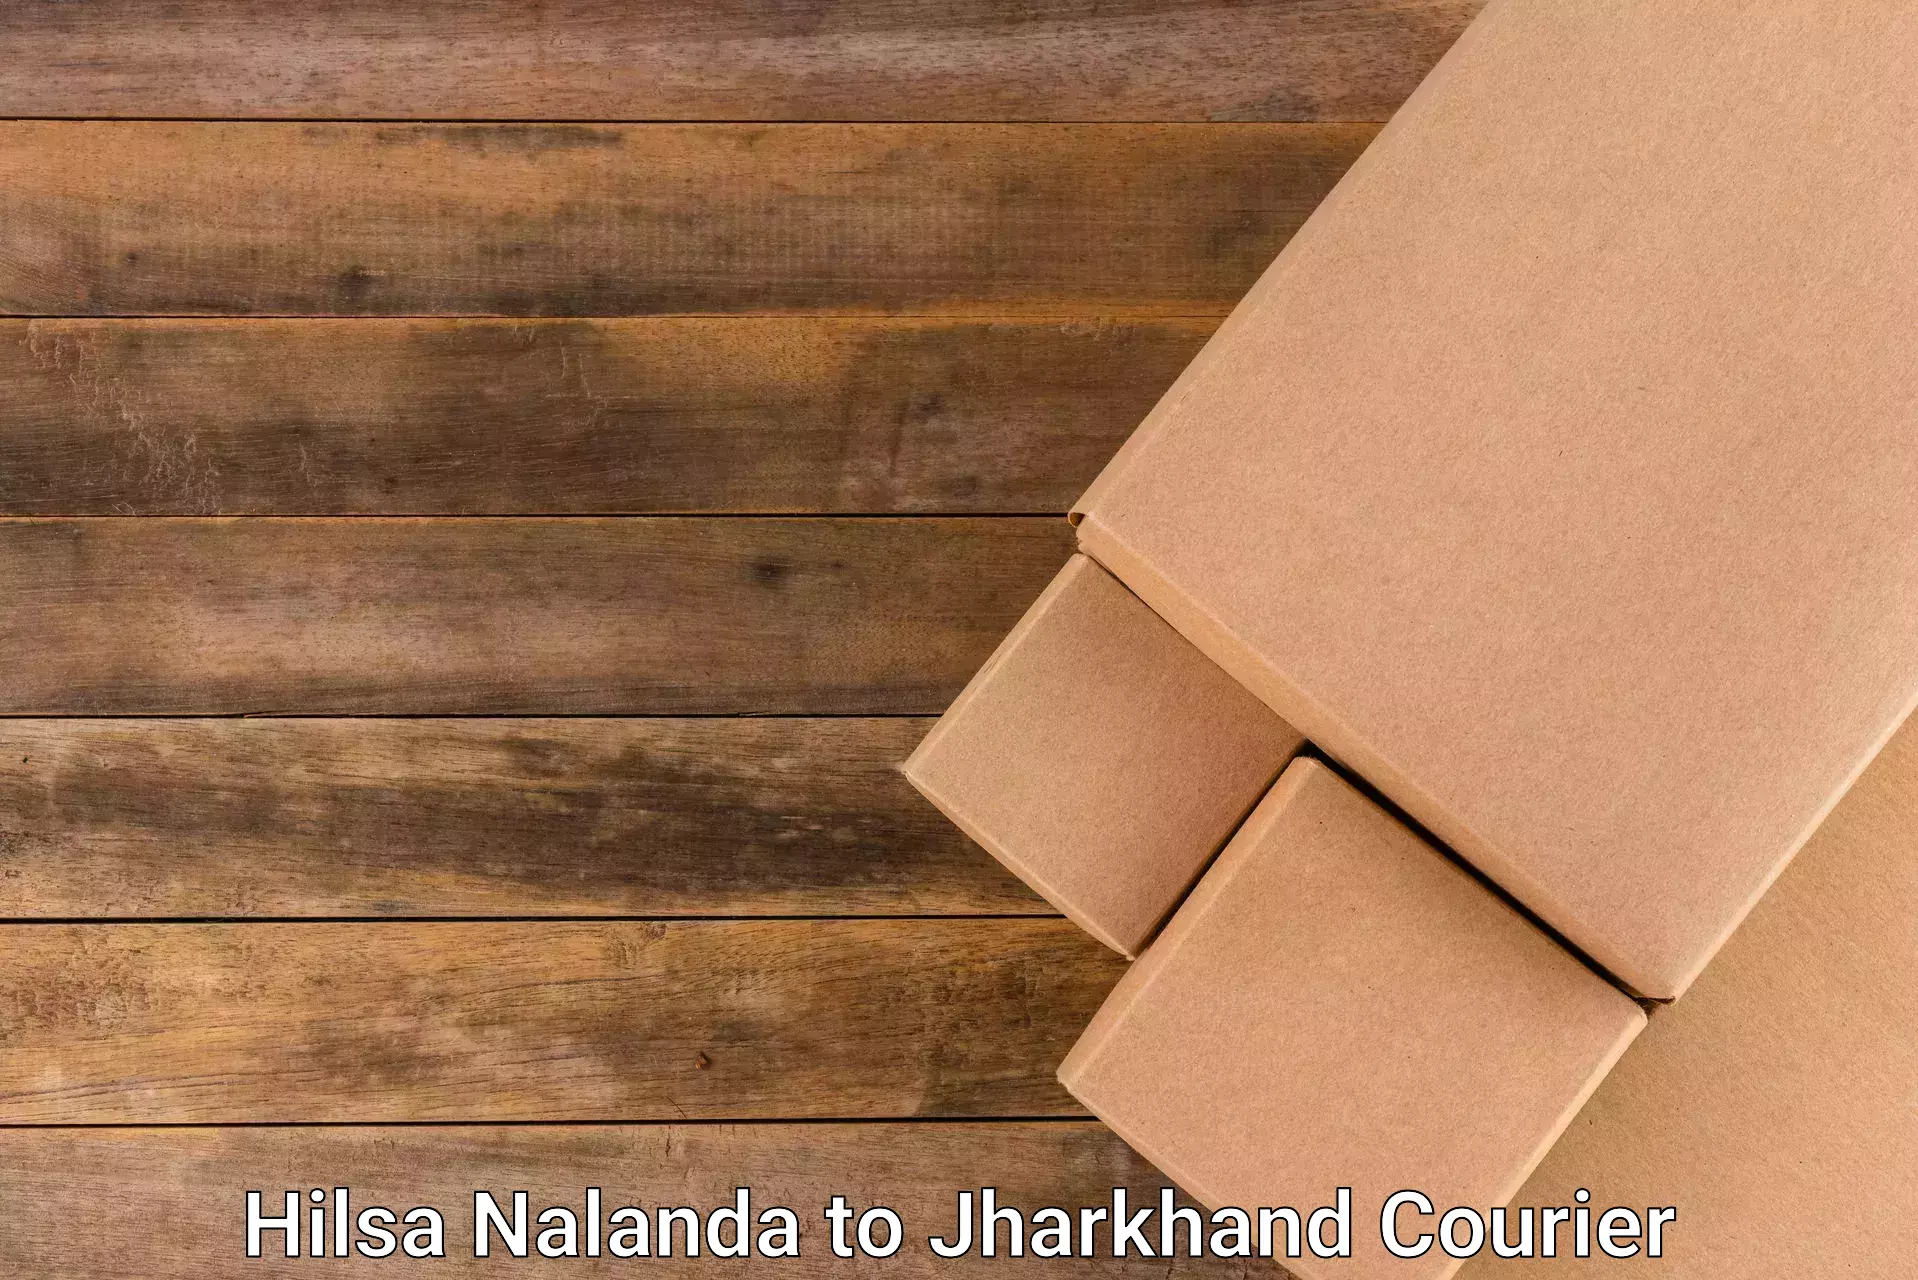 Express delivery capabilities Hilsa Nalanda to Chatra